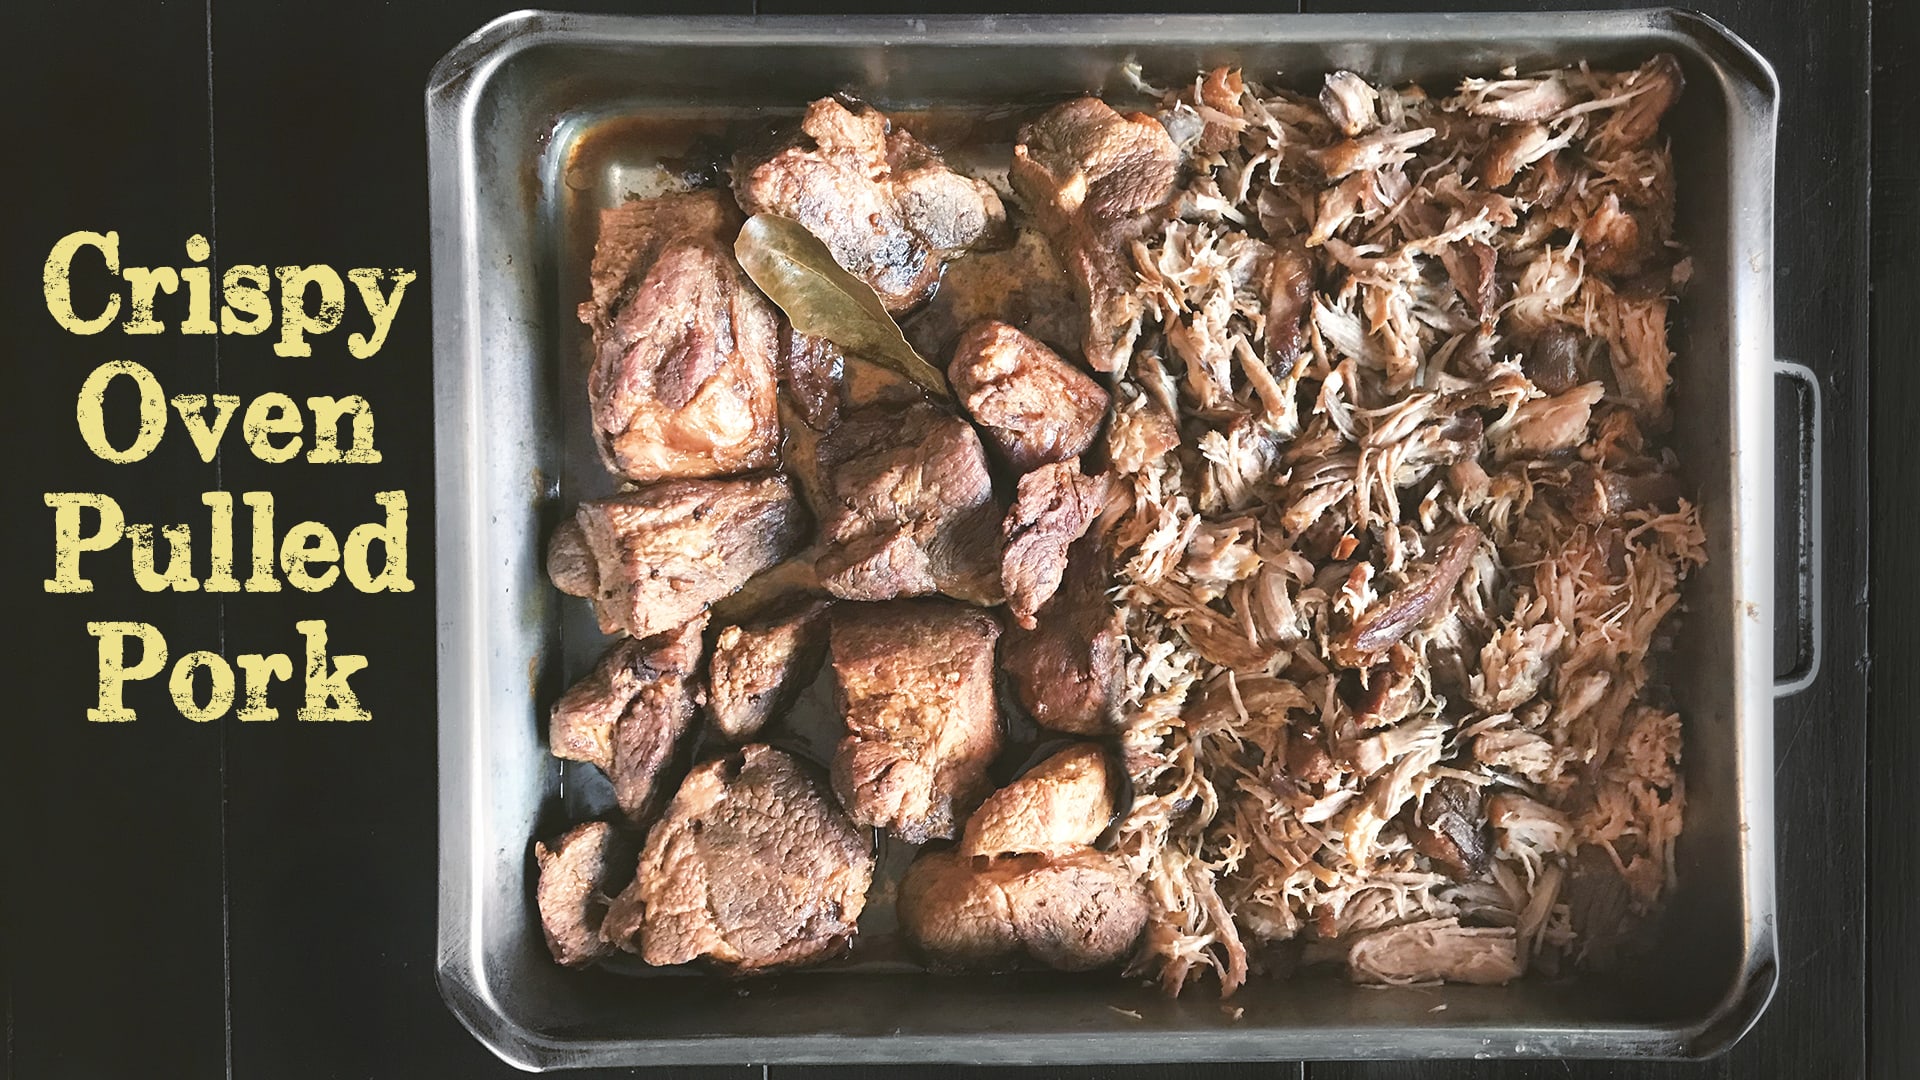 Oven Roasted Pulled Pork Recipe - Chisel & Fork